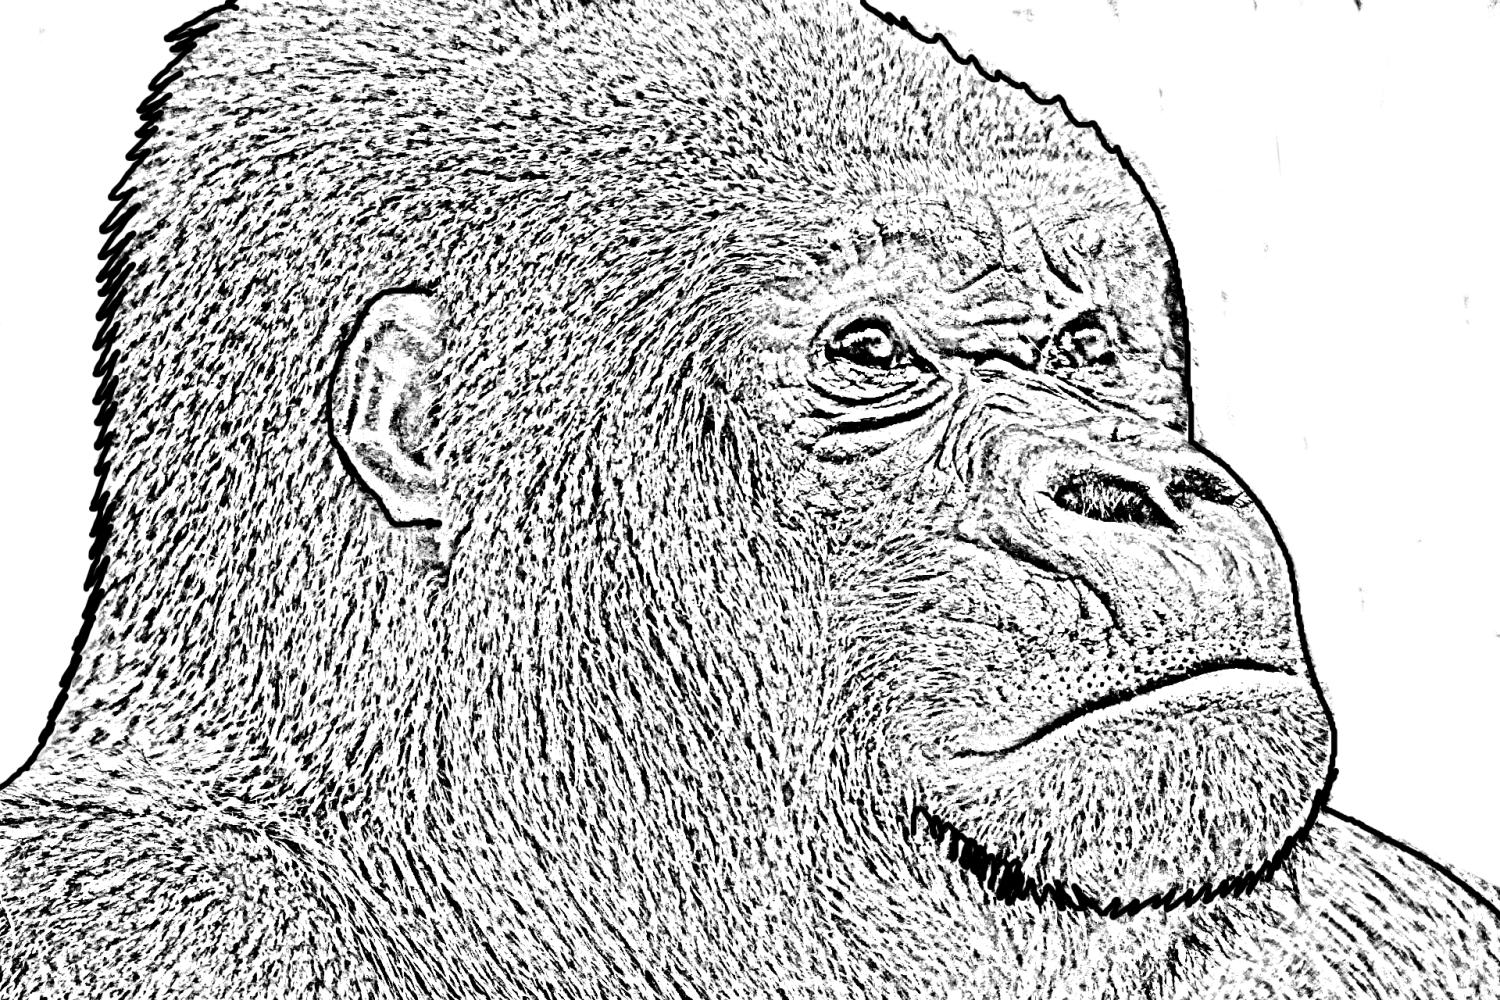 Disegno da colorare di un gorilla